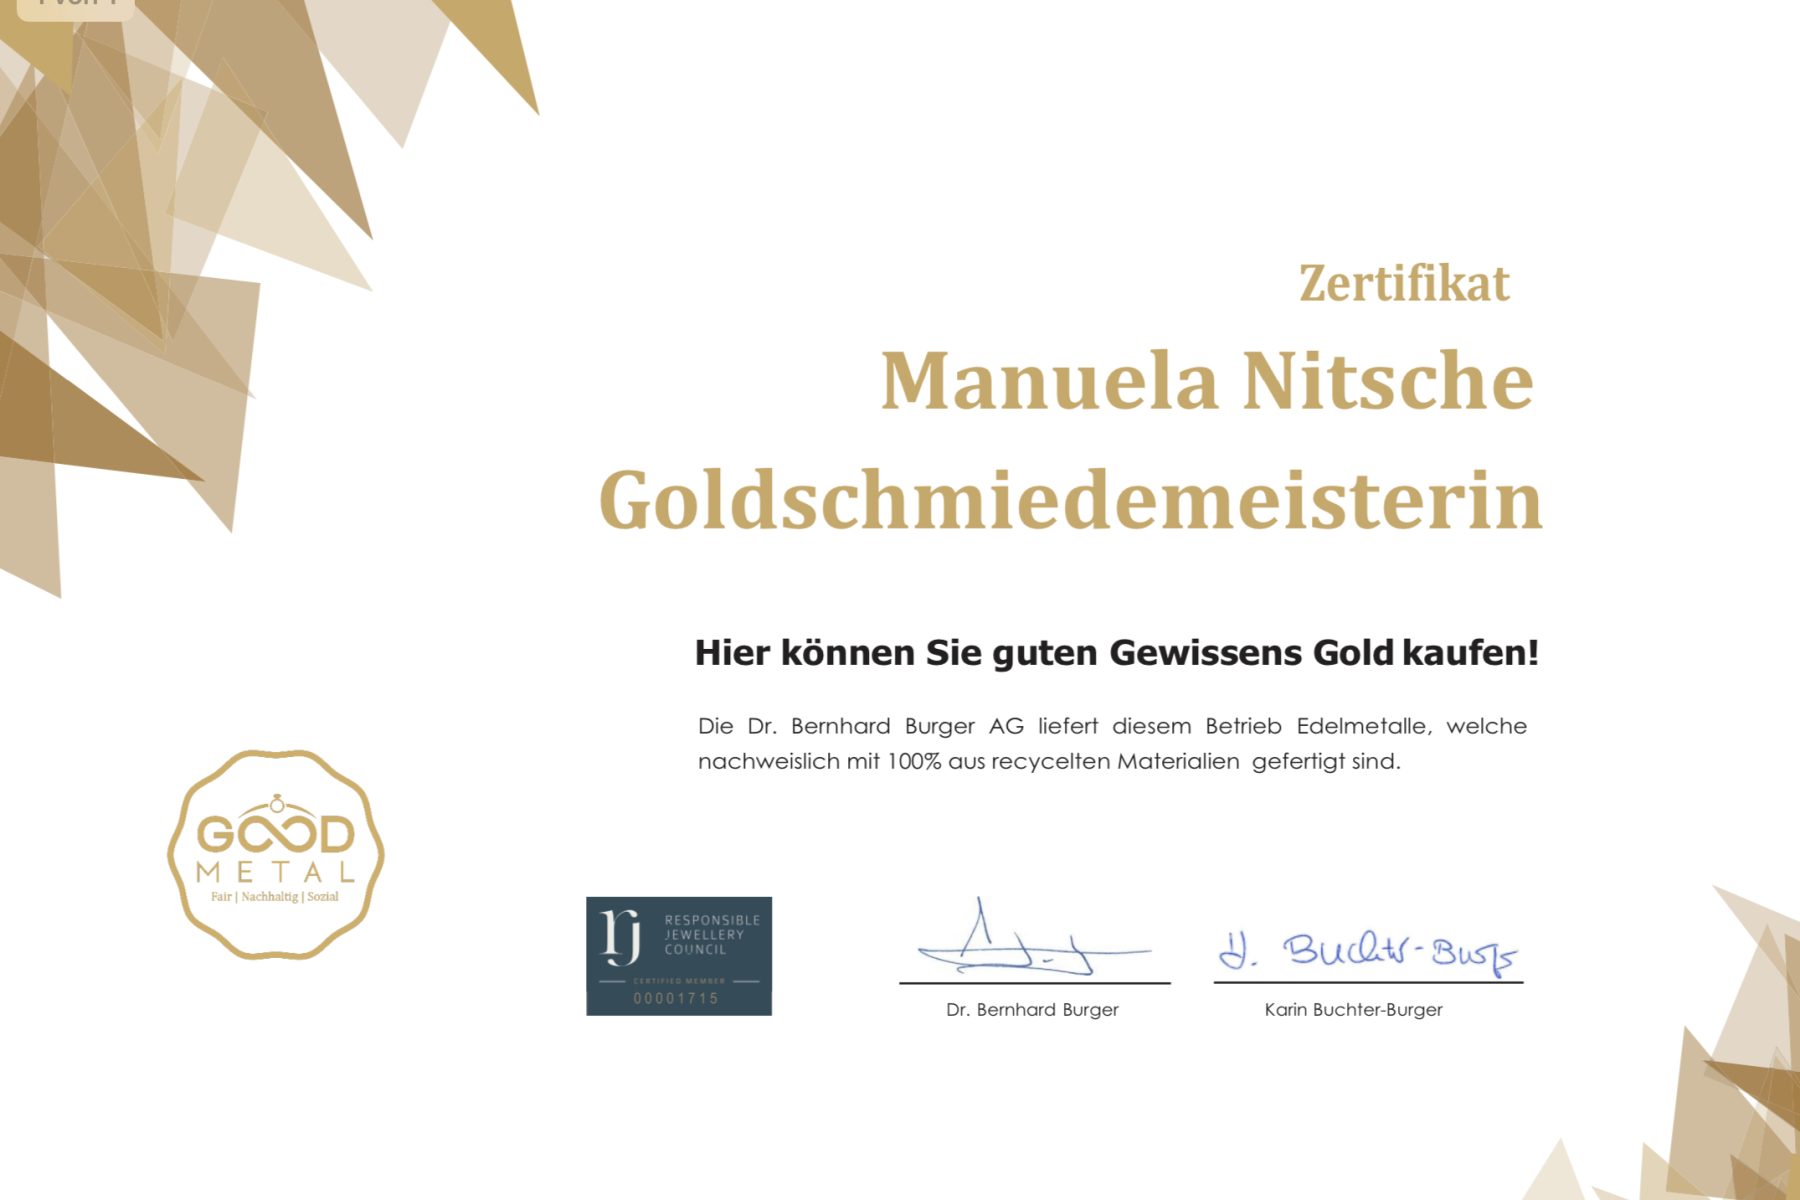 RJC Zertifikat der Dr. Bernhard Burger AG. Der Responsible Jewellery Council (RJC) ist ein internationaler Zusammenschluss von Unternehmen aus der Gold- und Juwelierwarenbranche von der Mine bis zum Handel.